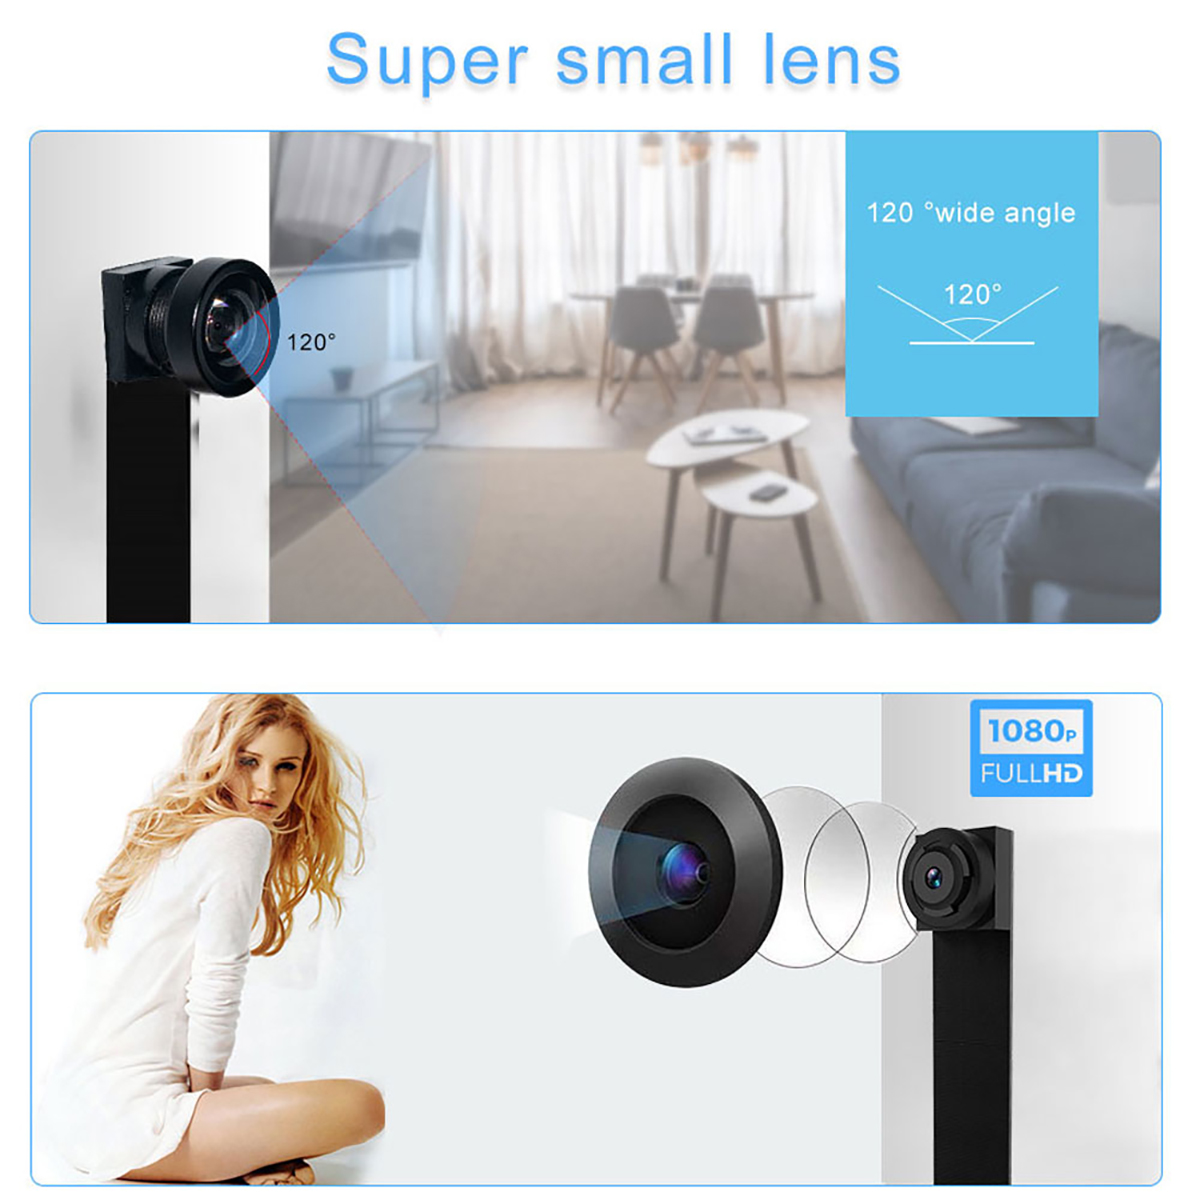 Mini Camera Ip Camera Mini Wifi Camera 1080p Micro Hd Camera Video Recorder Surveillance Cameras Remote Monitor